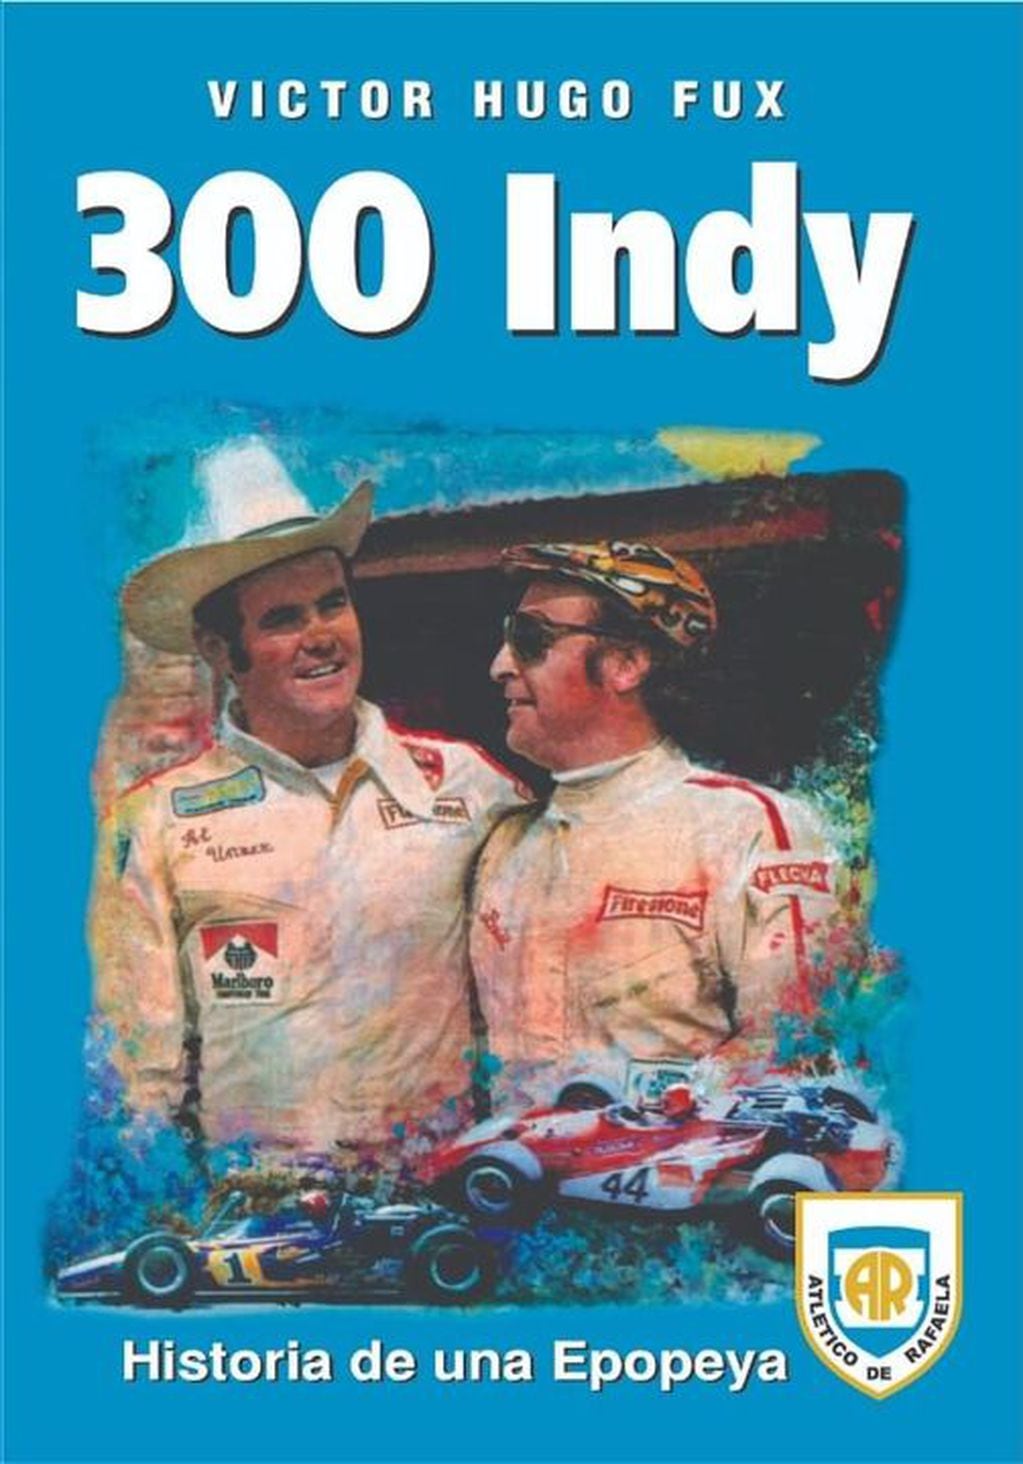 Tapa del libro en alusión a los 50 años de las 300 Indy